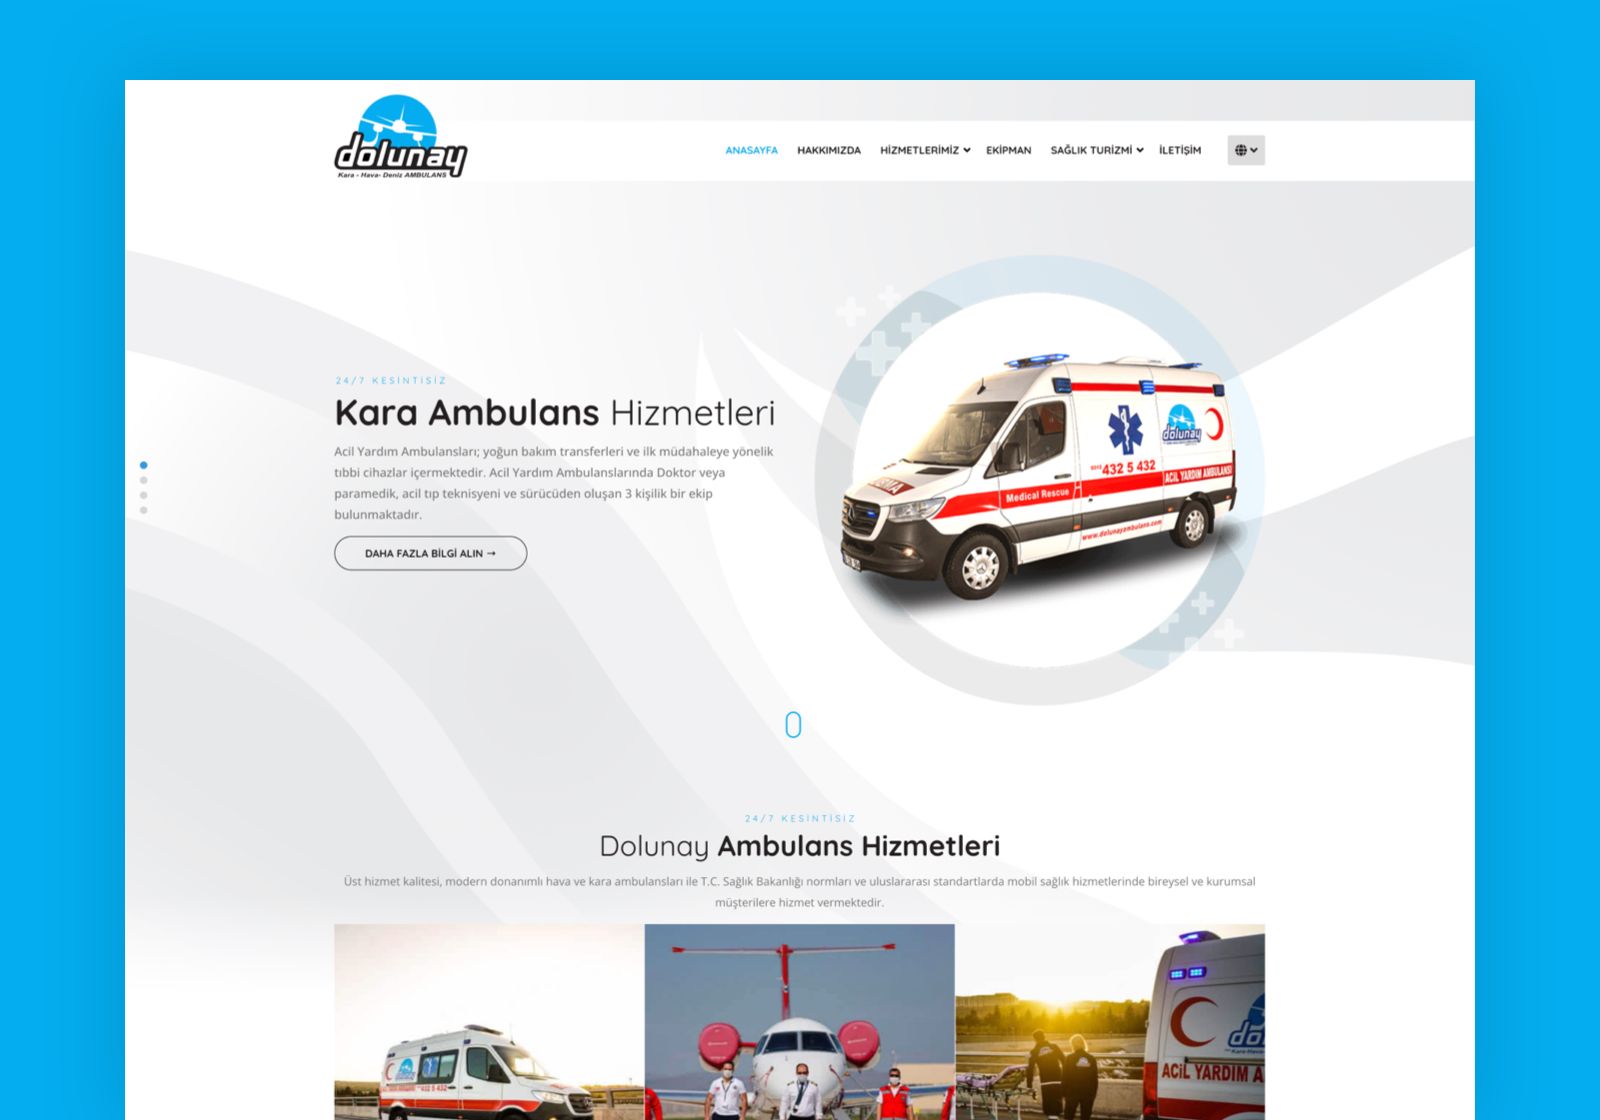 Dolunay Ambulans - 7/24 Özel Ambulans Hizmetleri